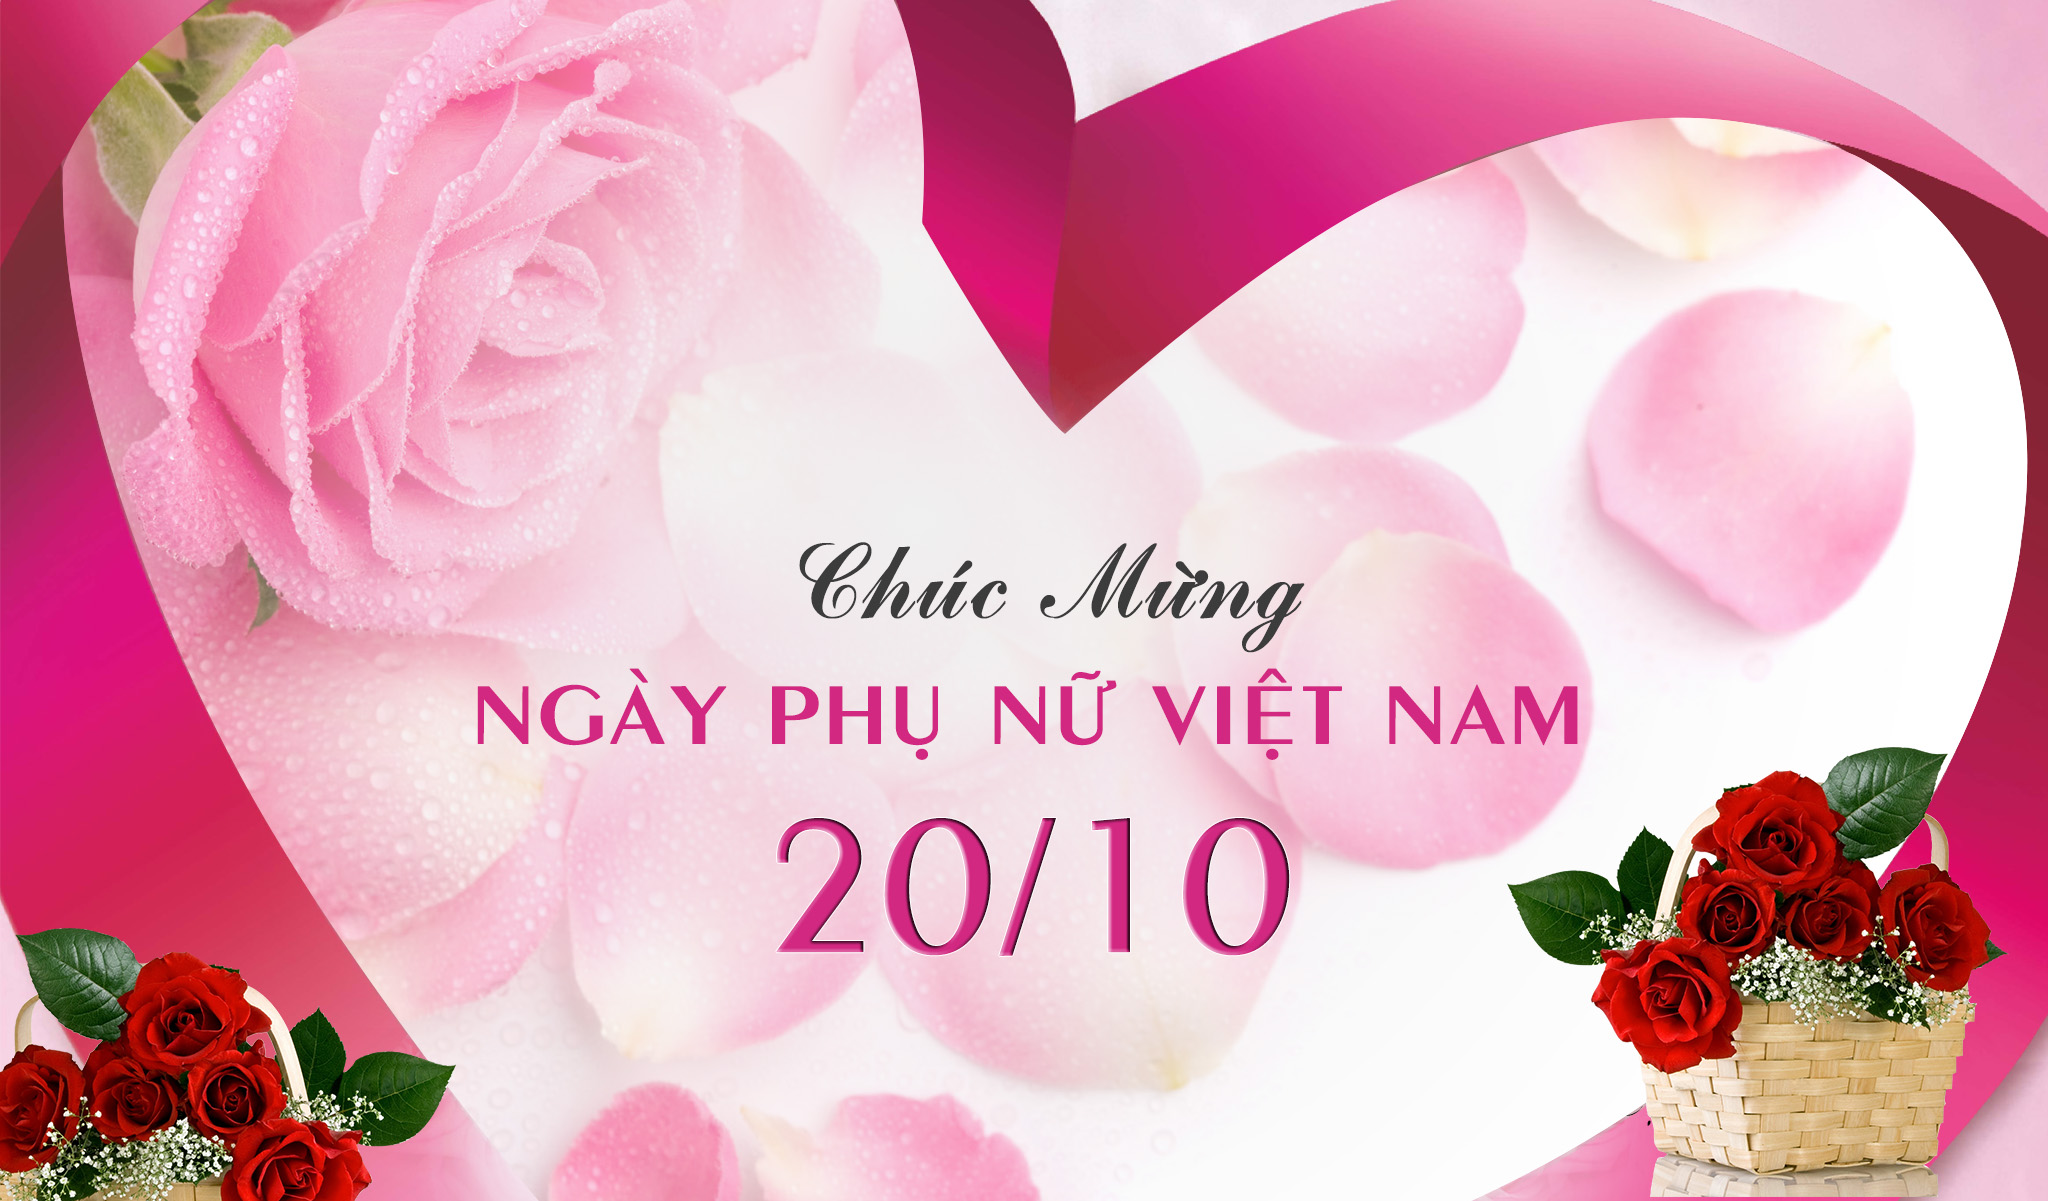 van ha chuc mung 20 10 2 - Kỷ niệm ngày Phụ nữ Việt Nam 20/10 | Vật tư da giày Vân Hà